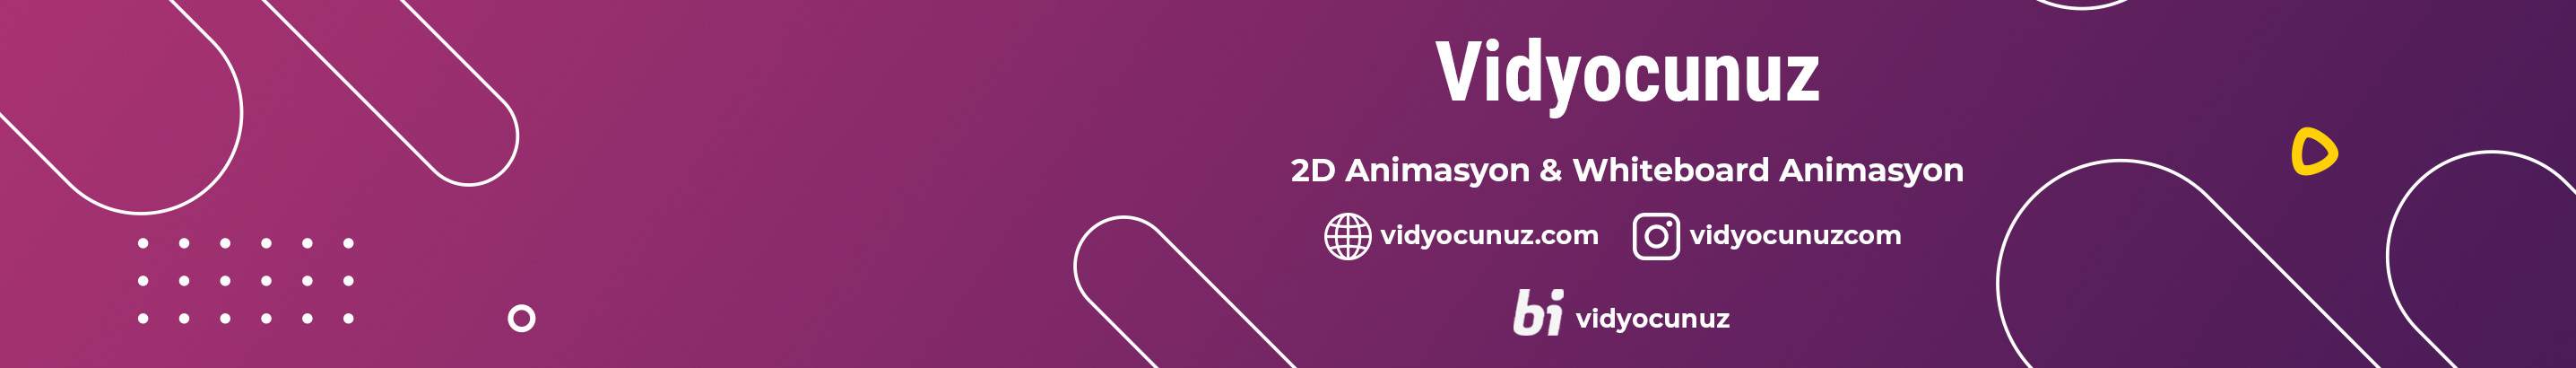 Vidyocunuz Animasyon's profile banner